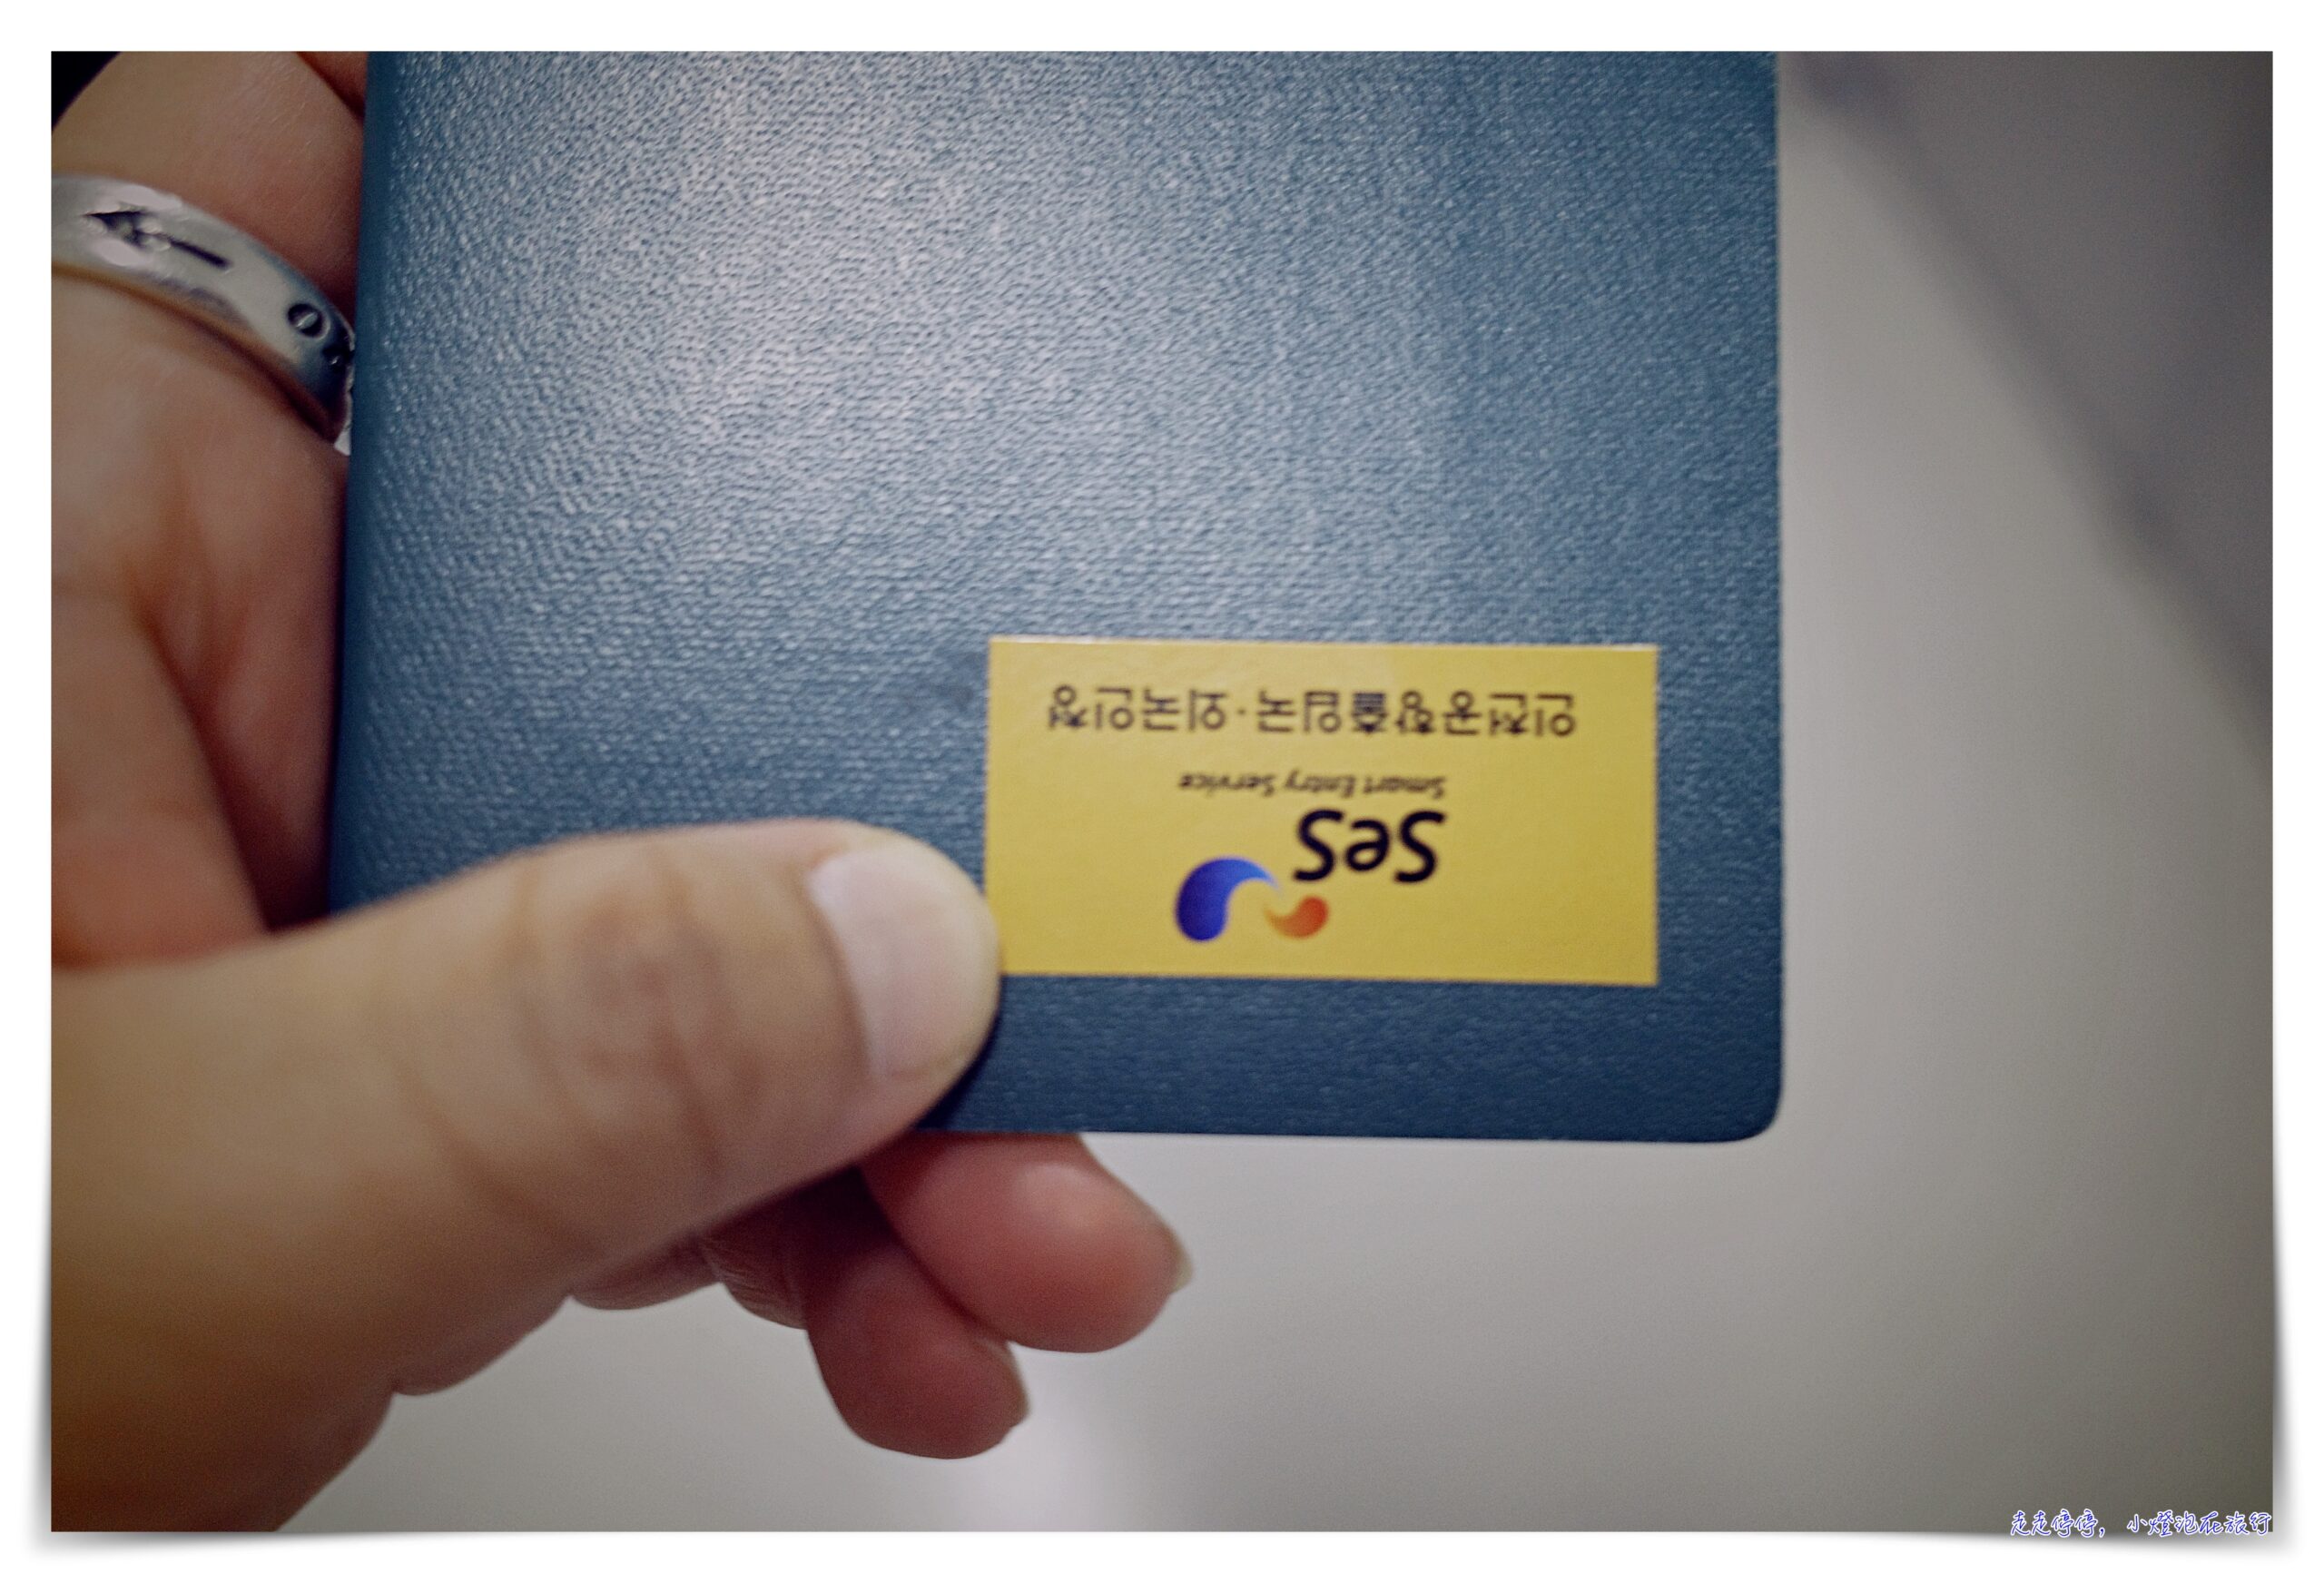 延伸閱讀：韓國快速自動通關申請，以後都走Face ID自動通關走道就可以